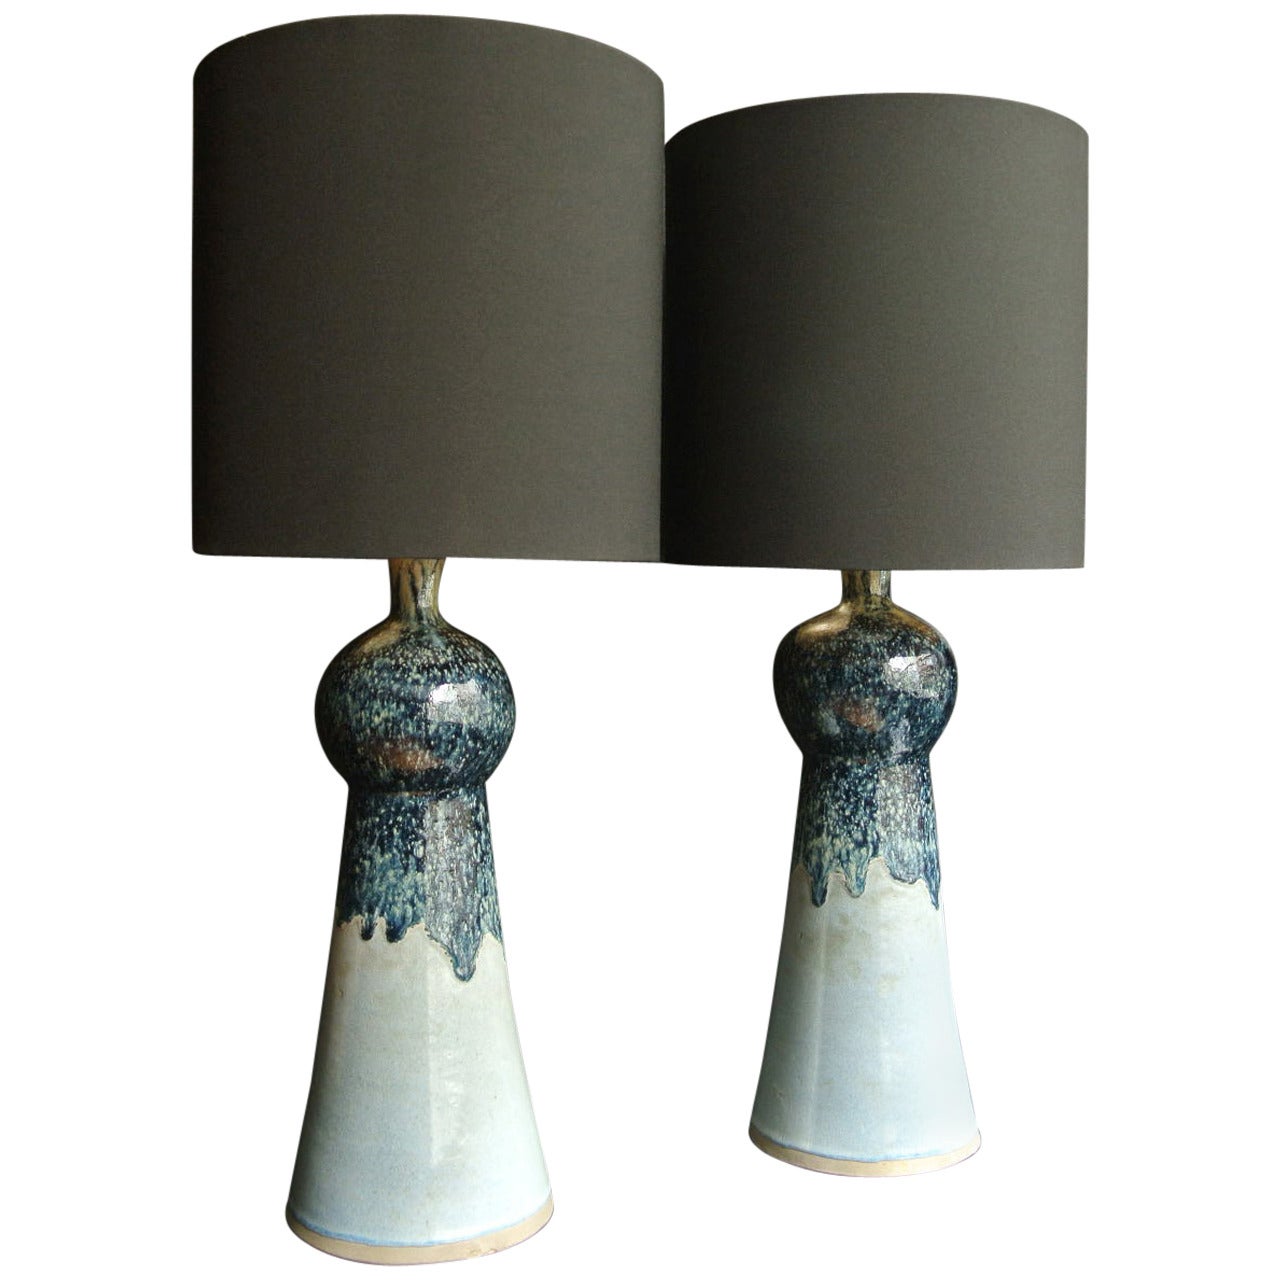 Aldo Londi Pair of Ceramic Lamps